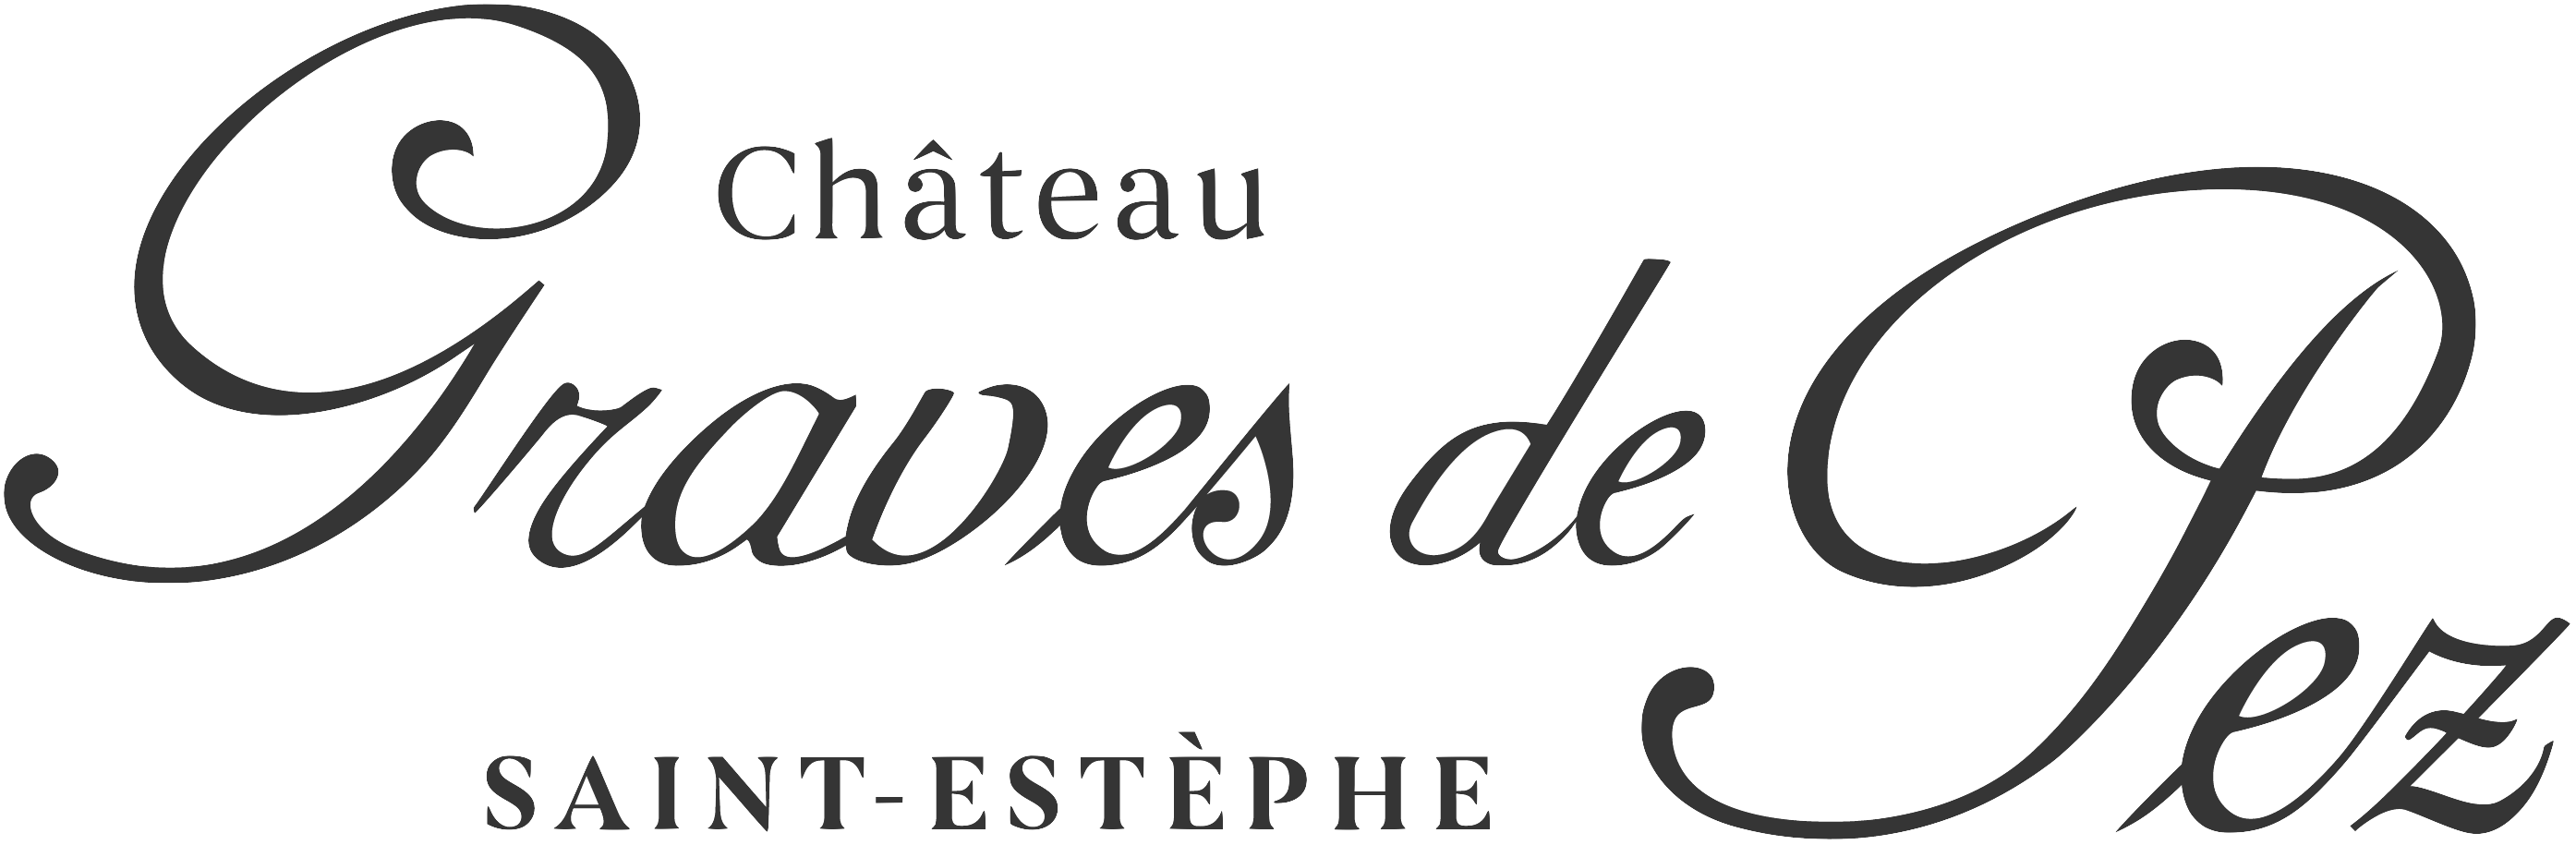 Logo Chateau Graves de Pez